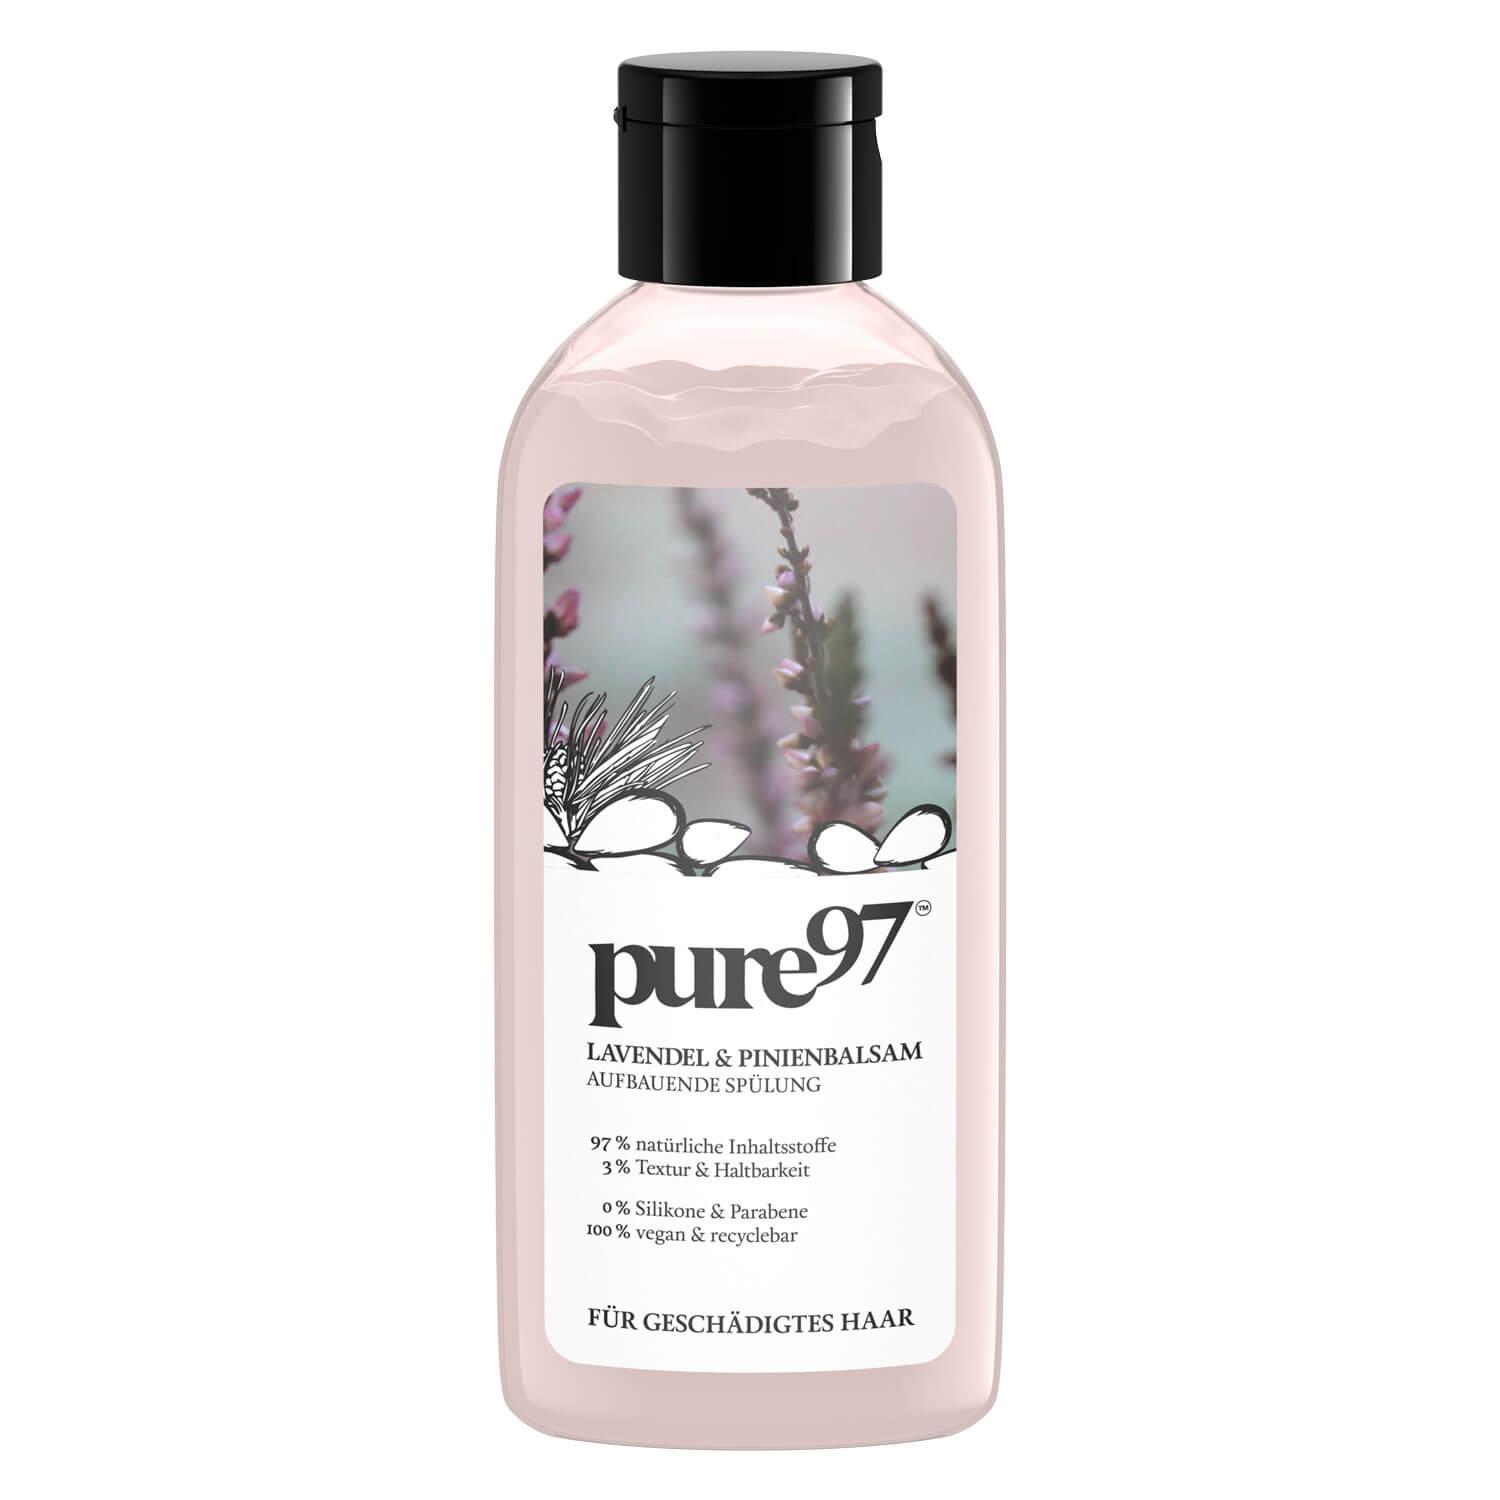 pure97 - Lavendel & Pinienbalsam Spülung